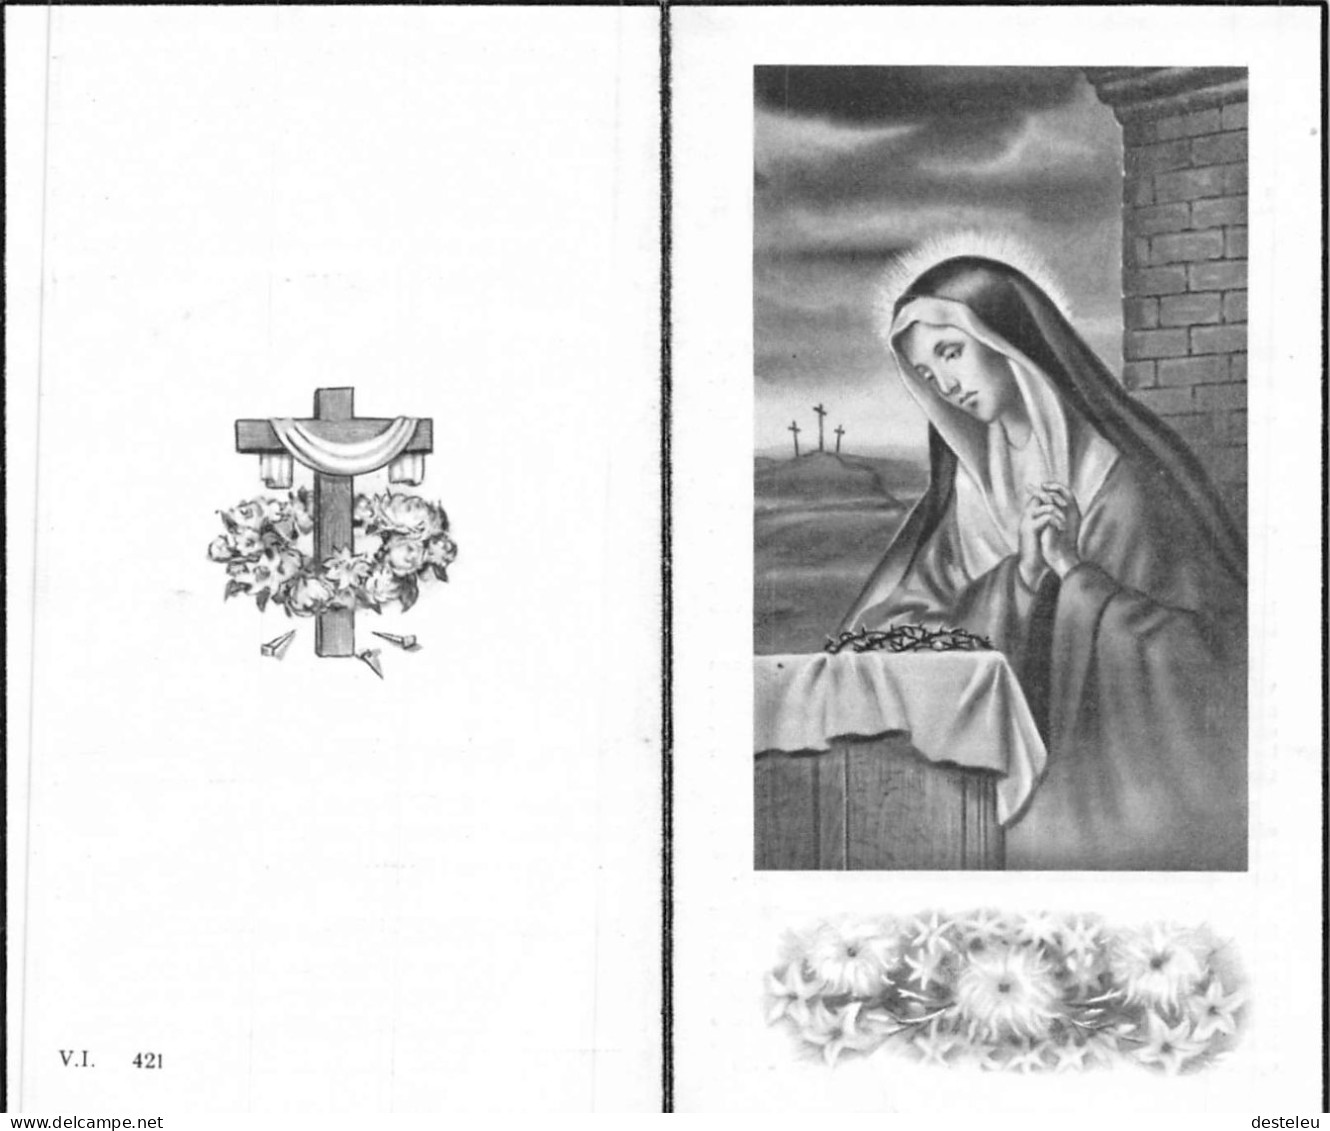 Doodsprentje / Image Mortuaire Louise Verbrugghe - Durnez - Zonnebeke Ieper 1866-1954 - Décès